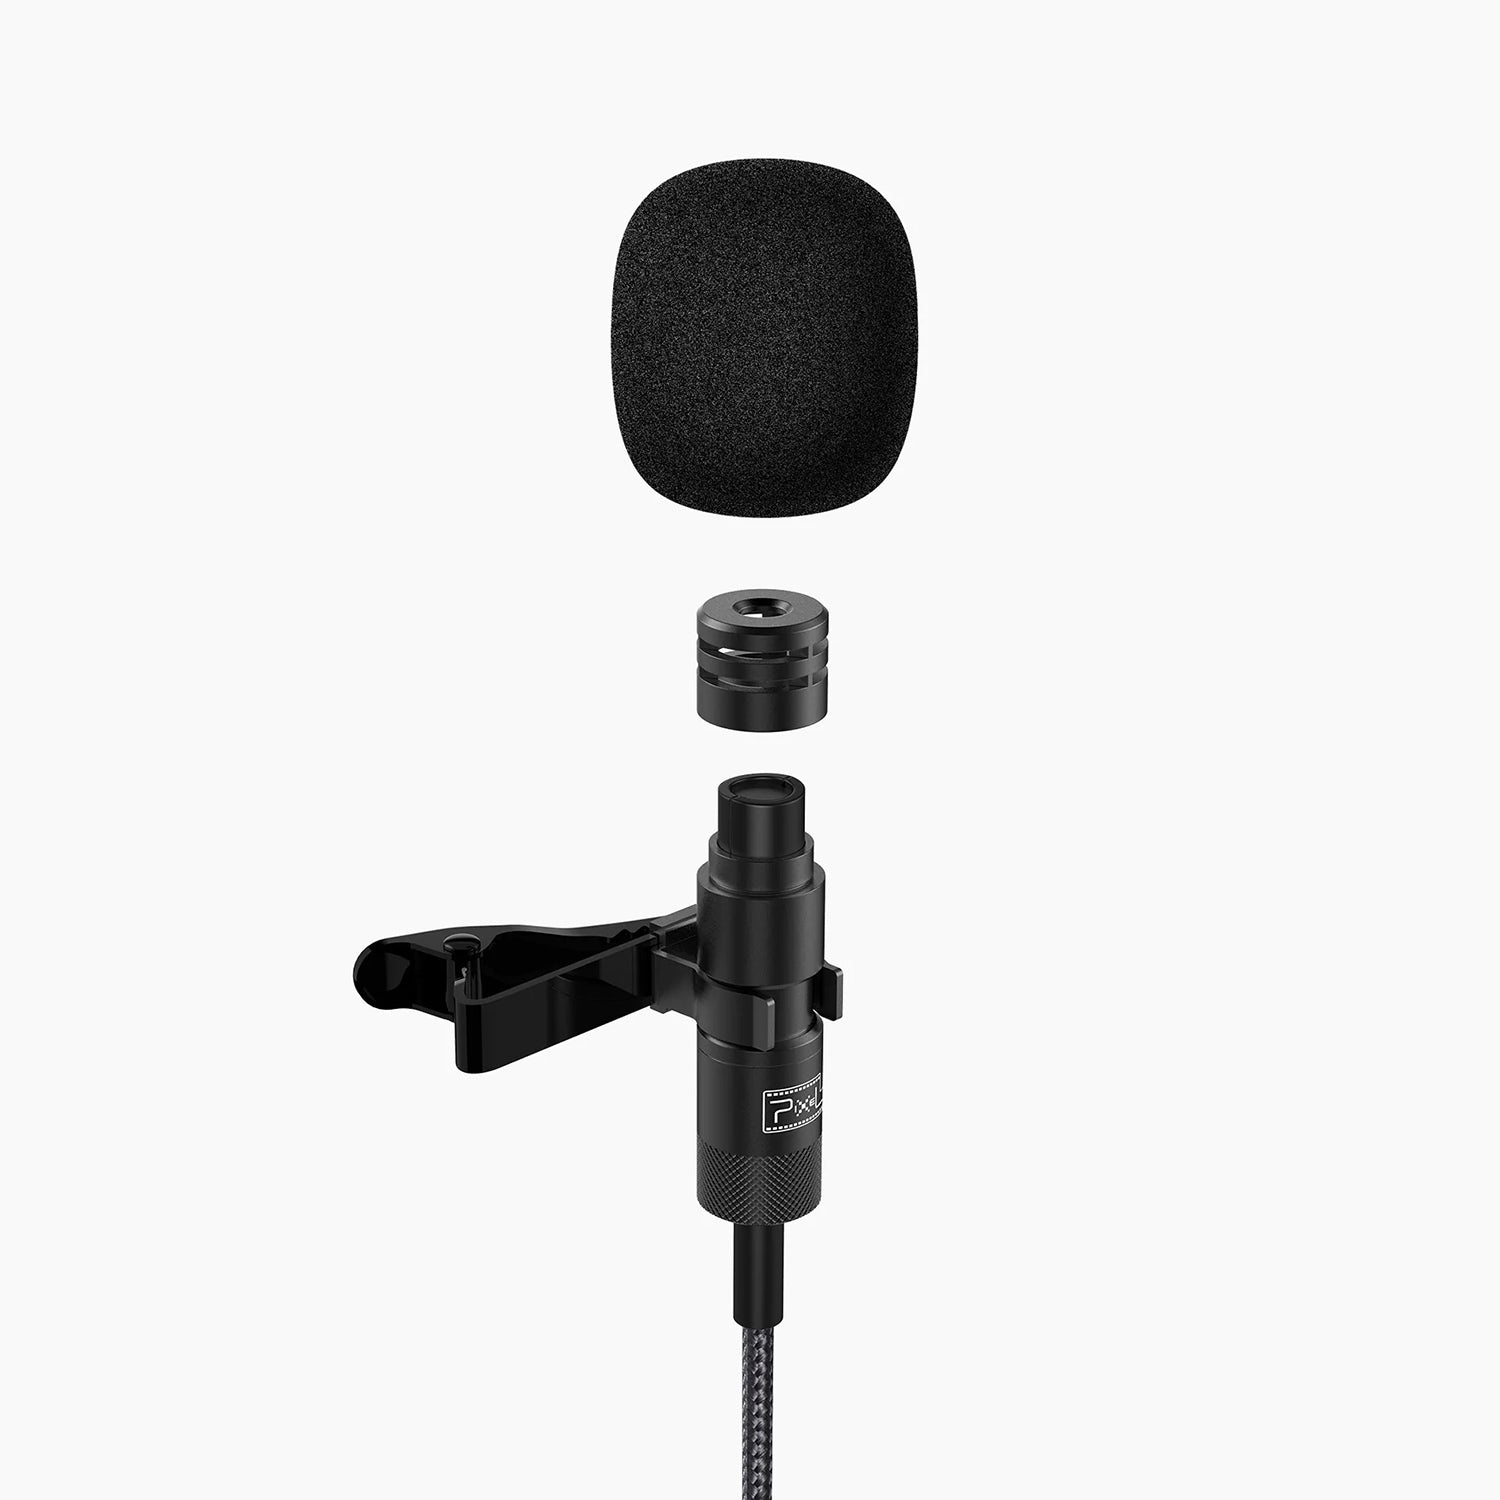 Pixel® Finch Lavalier Microphone